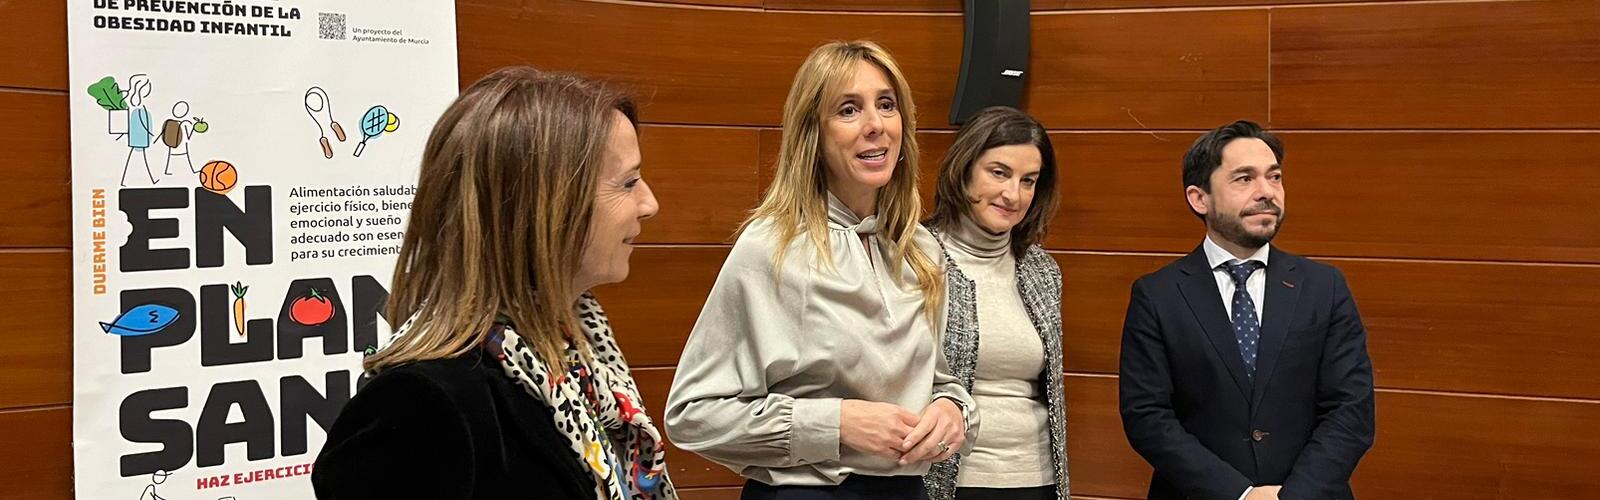 La profesora de Odolontología Yolanda Martínez impulsa un programa de salud bucondental infantil con el apoyo del Ayuntamiento de Murcia